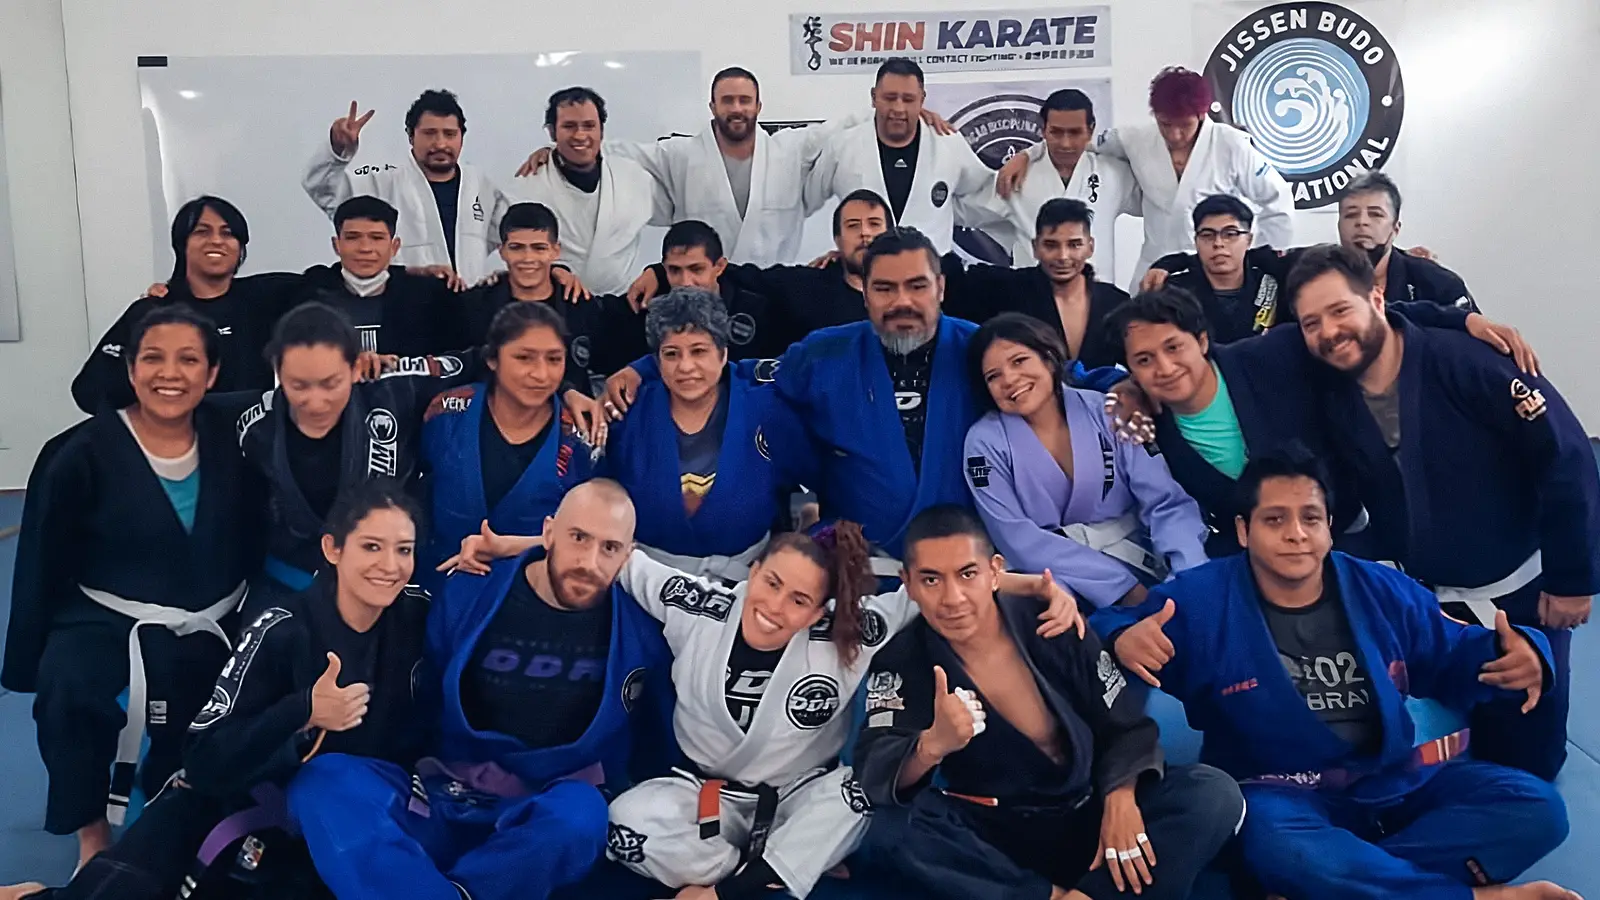 instructores y alumnos de jiu jitsu brasileño sentados de frente a la cámara